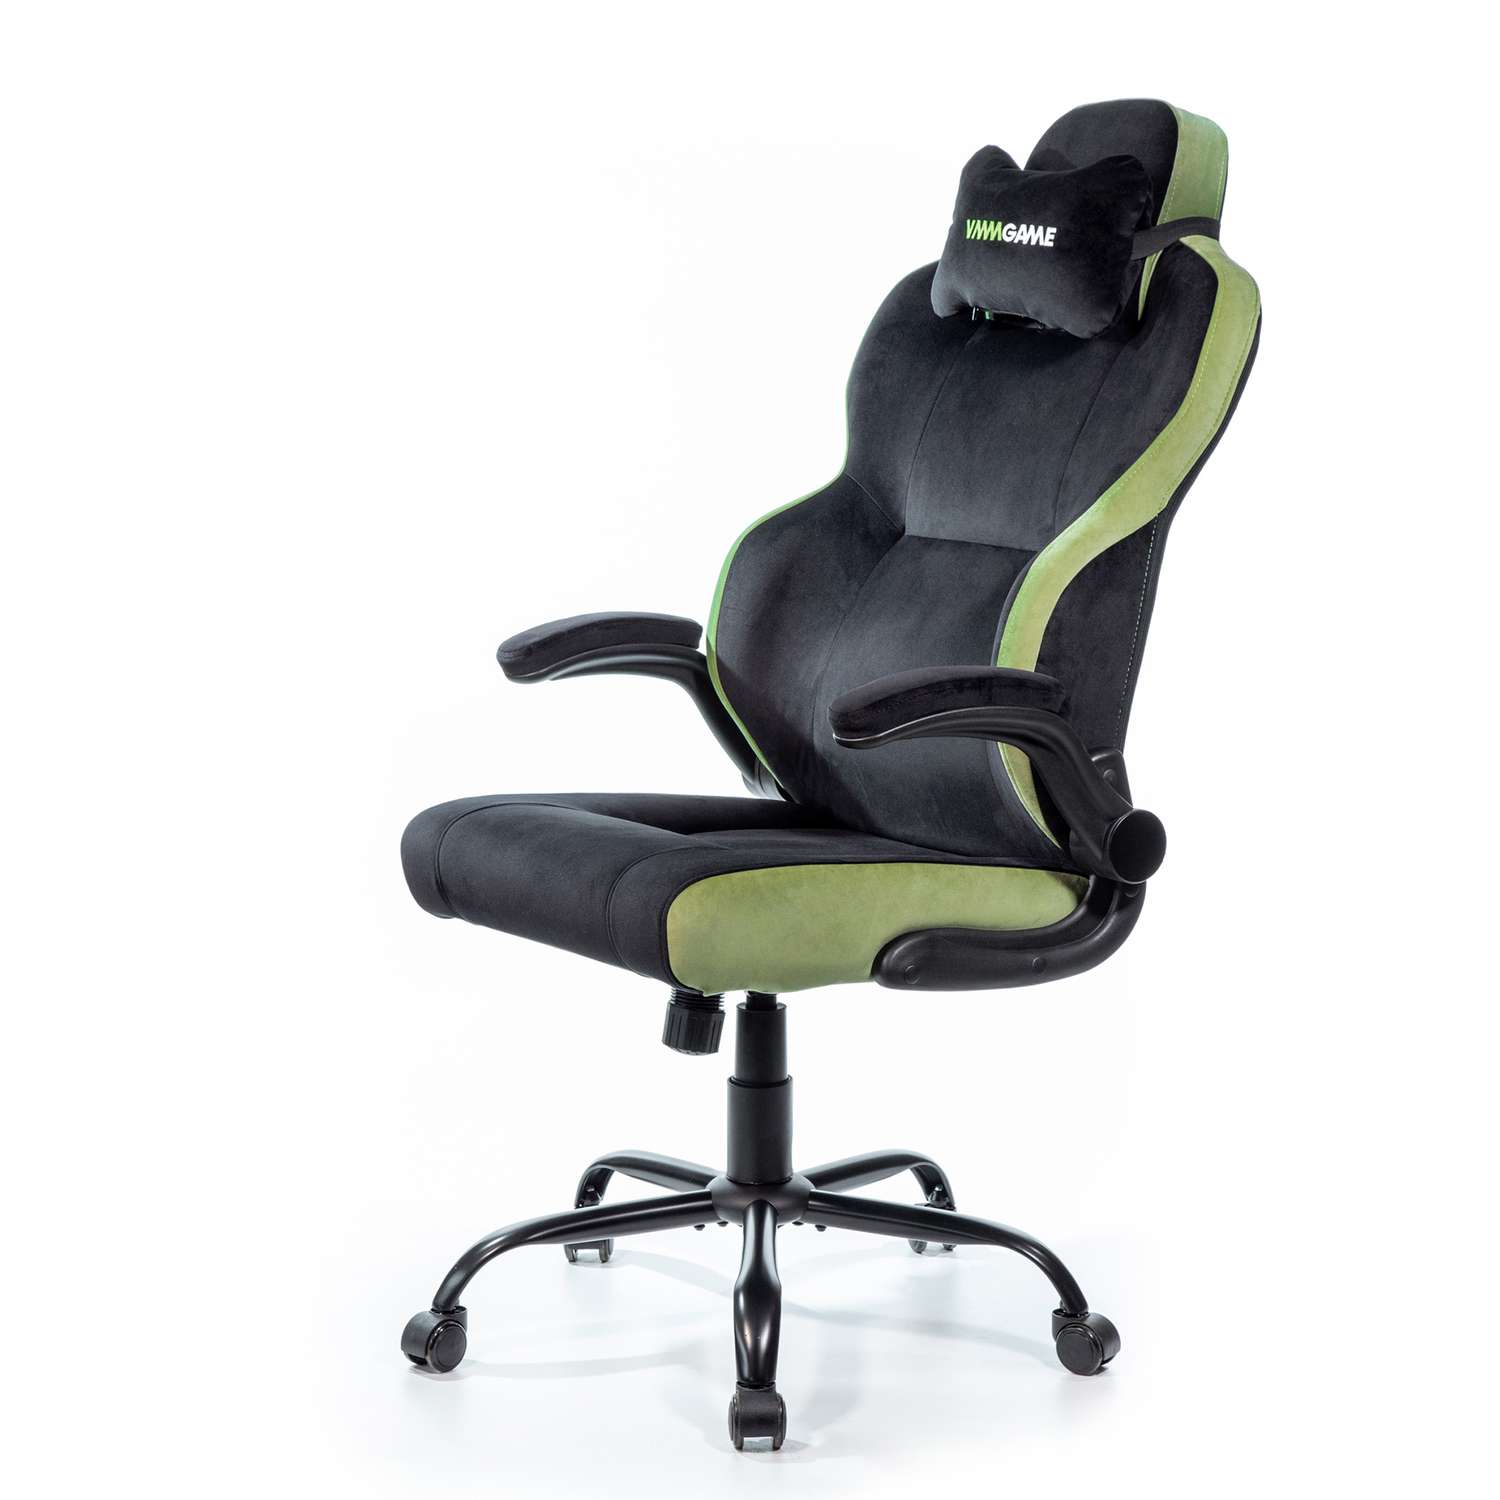 Кресло компьютерное VMMGAME UNIT велюр черно-зеленый - фото 1